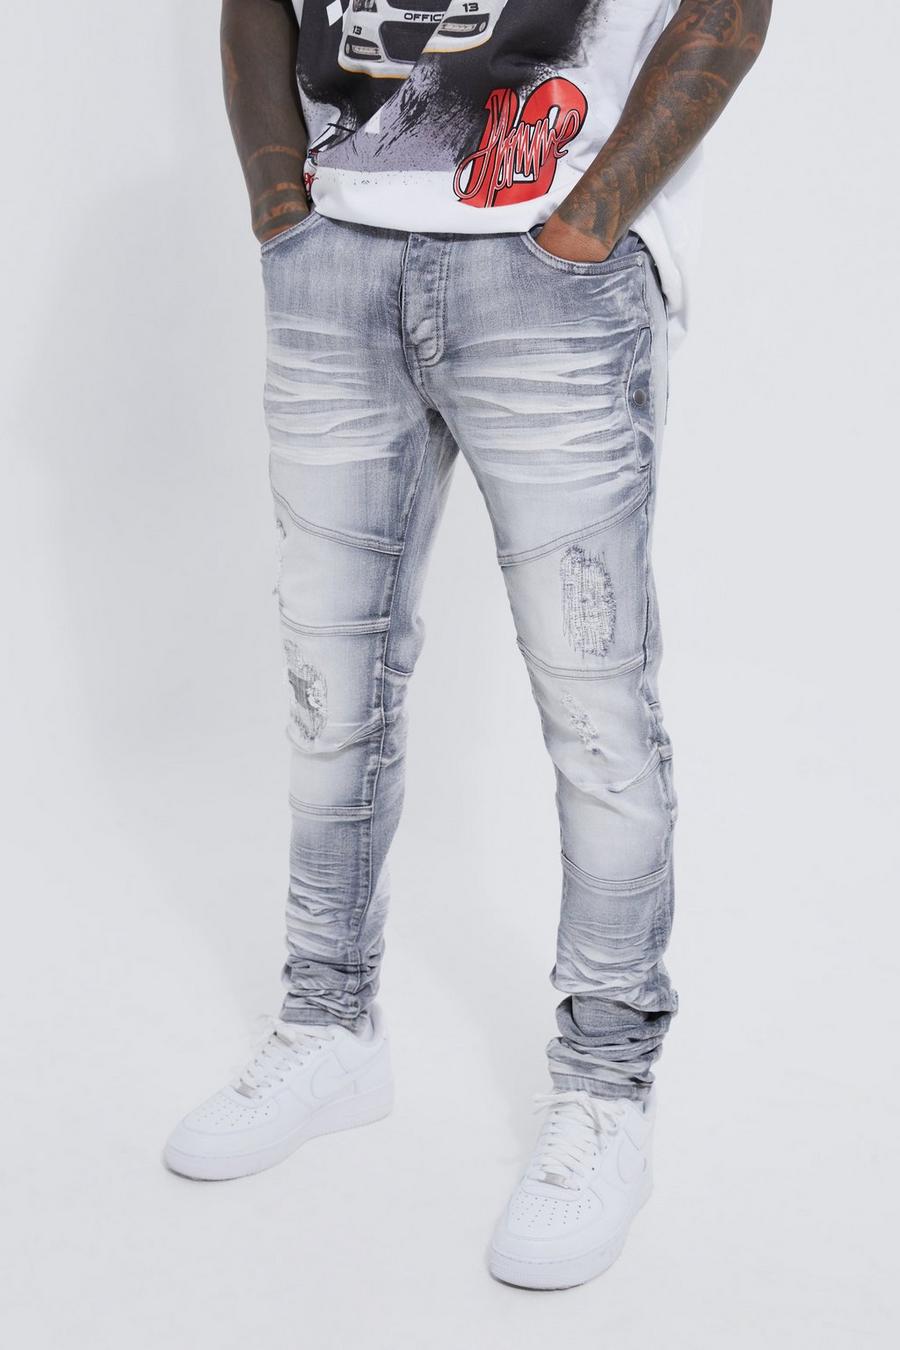 Jeans Skinny Fit Stretch pesanti candeggiati con strappi, Ice grey